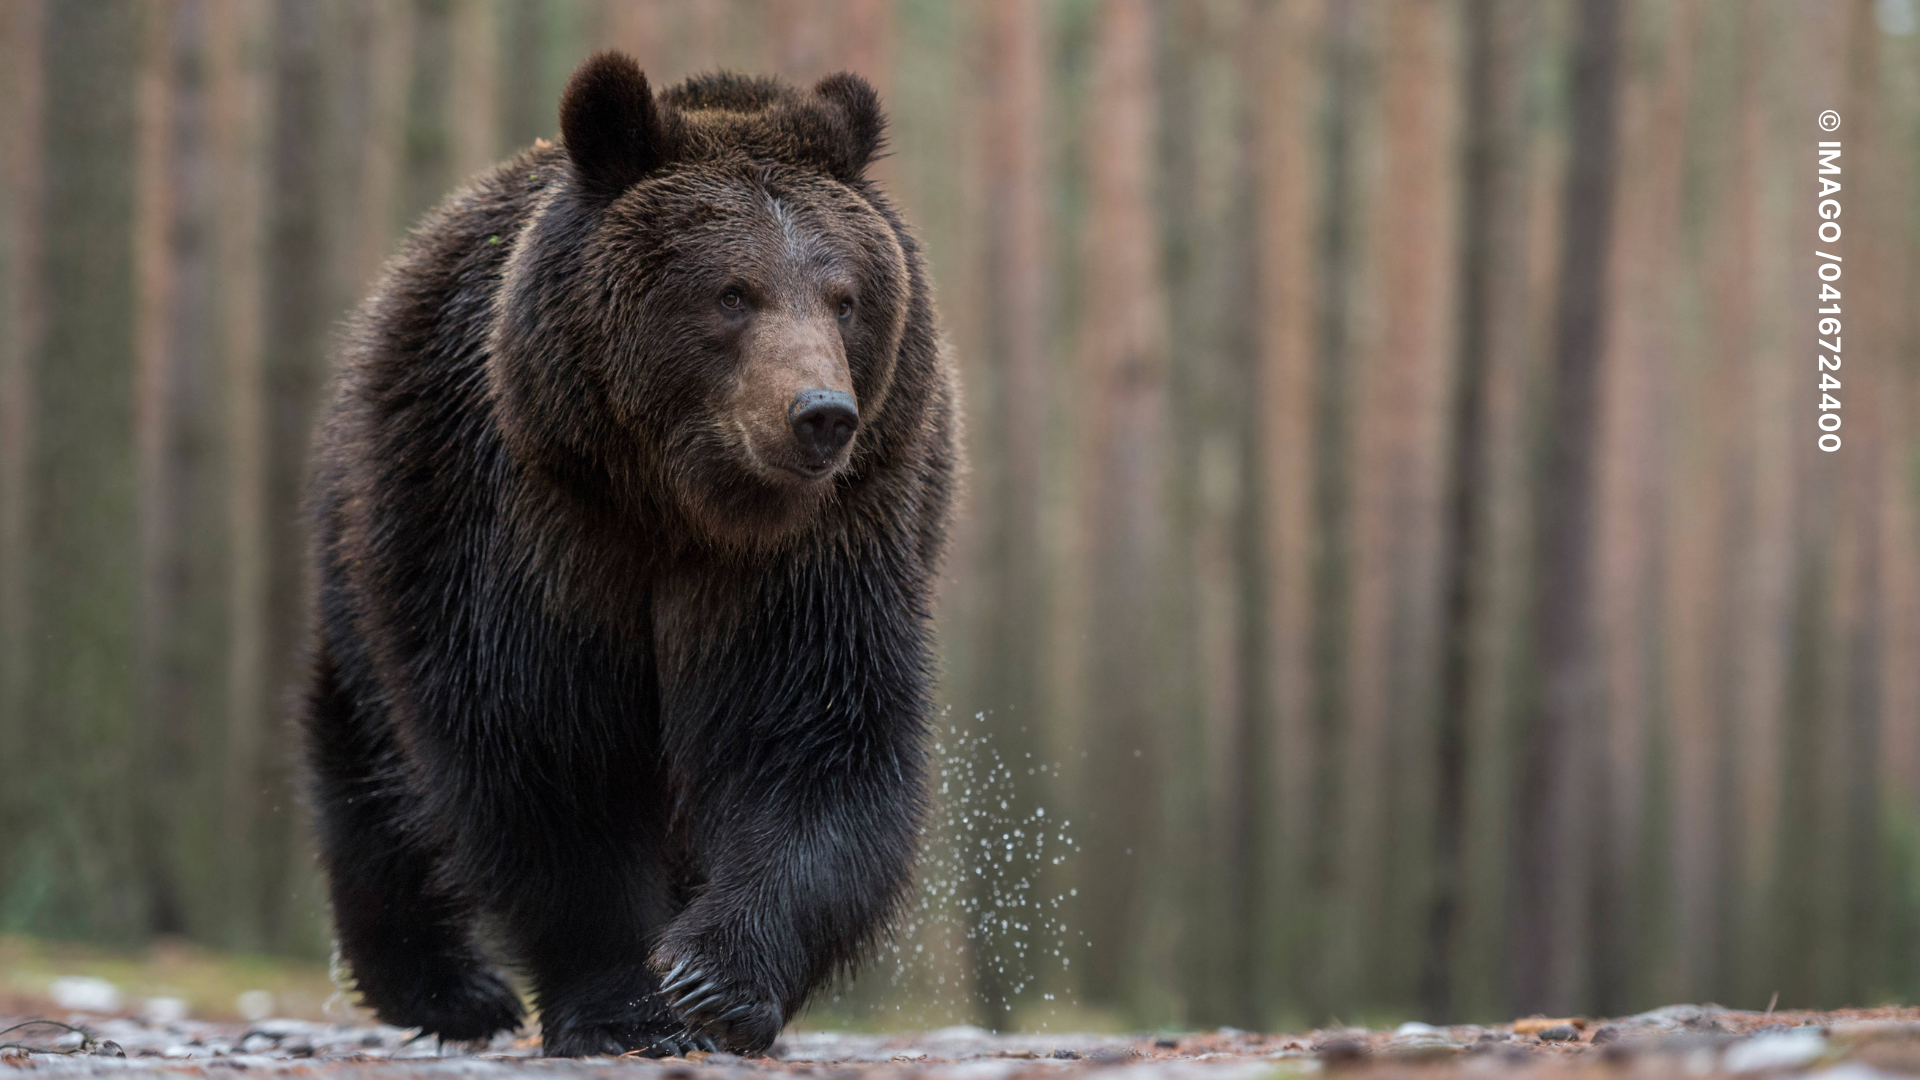 Mann vs. Bär – Warum Frauen lieber mit einem Bären alleine wären